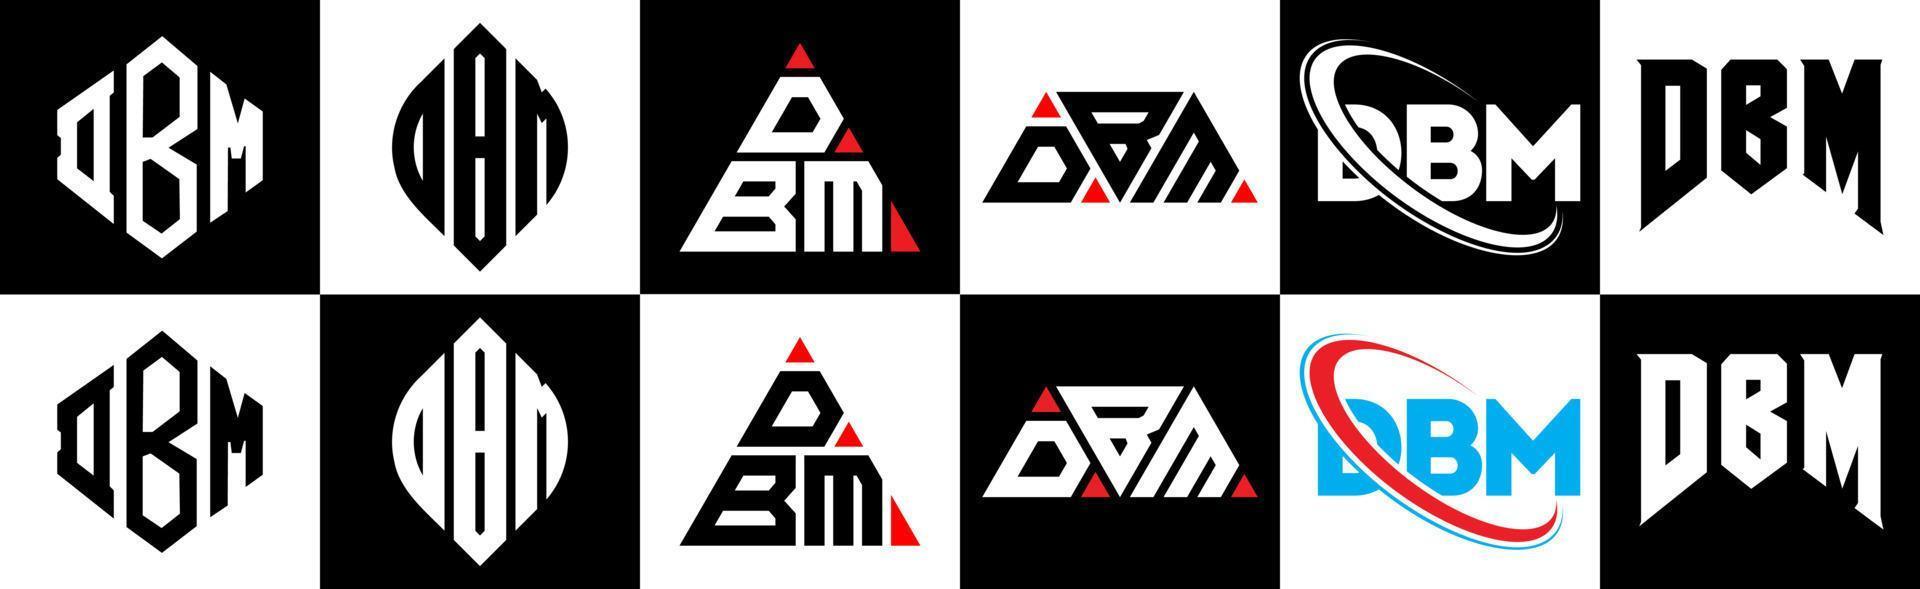 design de logotipo de carta dbm em estilo seis. polígono dbm, círculo, triângulo, hexágono, estilo plano e simples com logotipo de carta de variação de cor preto e branco definido em uma prancheta. dbm logotipo minimalista e clássico vetor